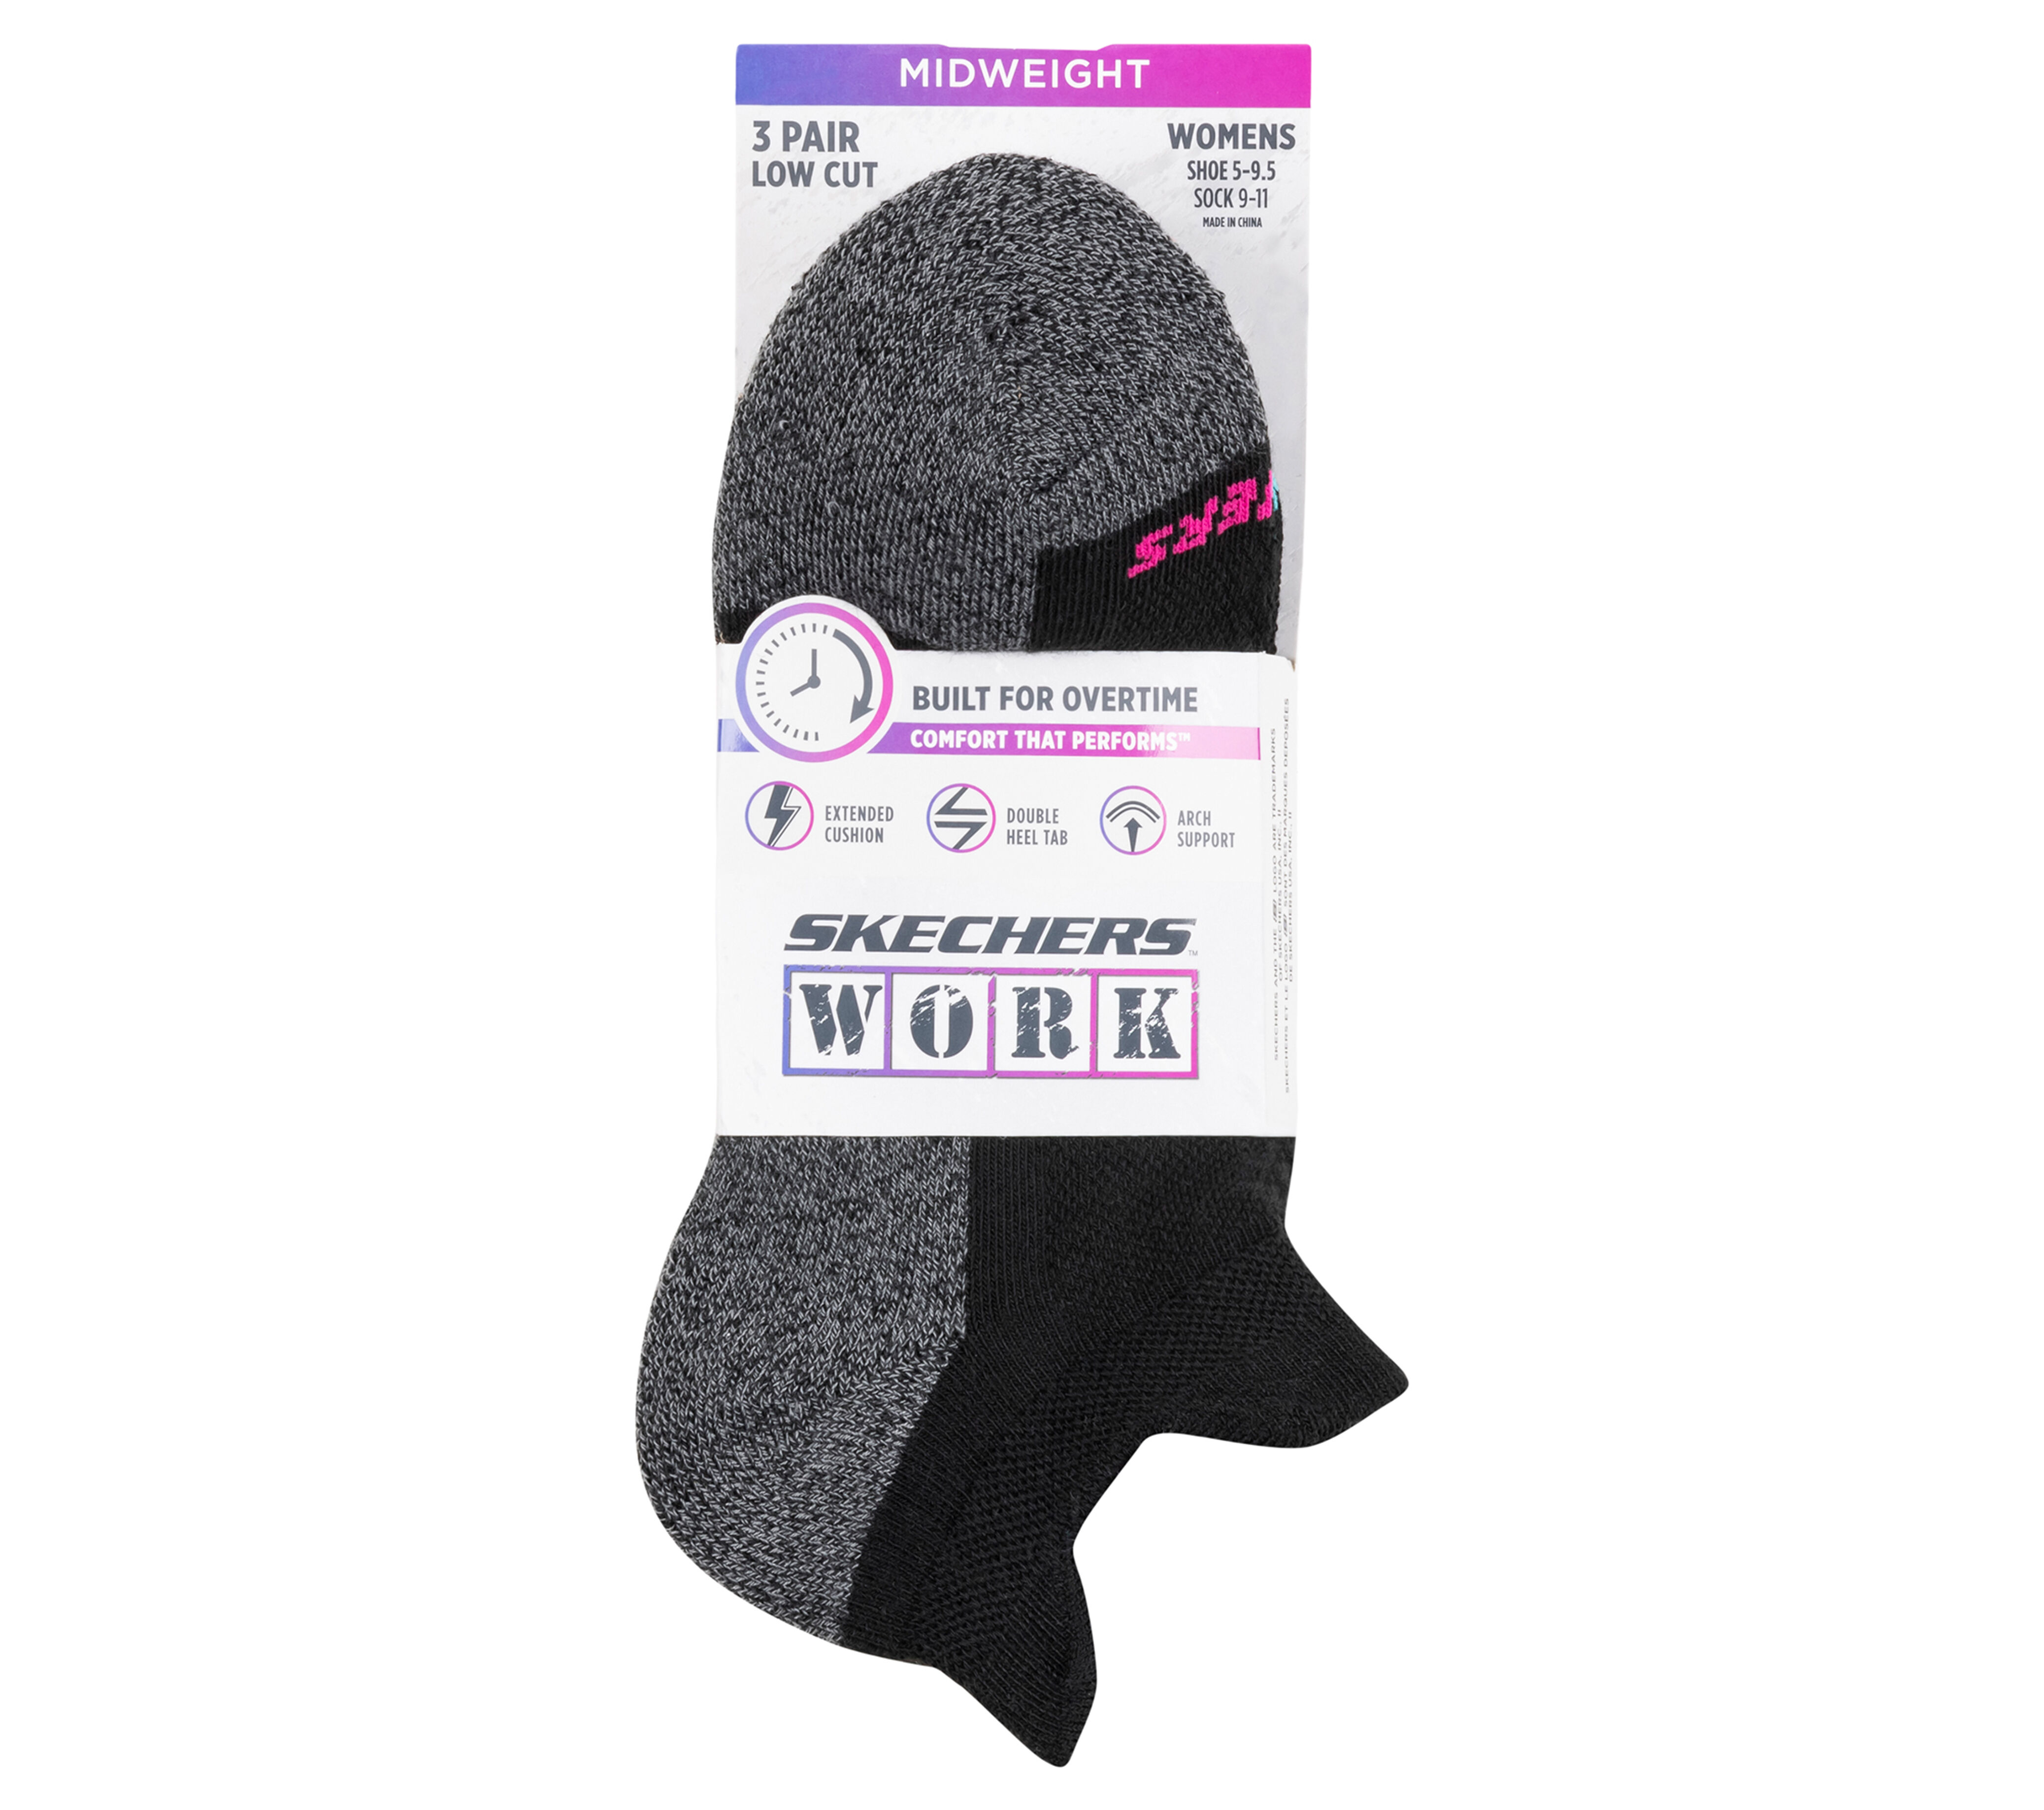 Work: Lowcut Heel Tab Socks - 3 Pack